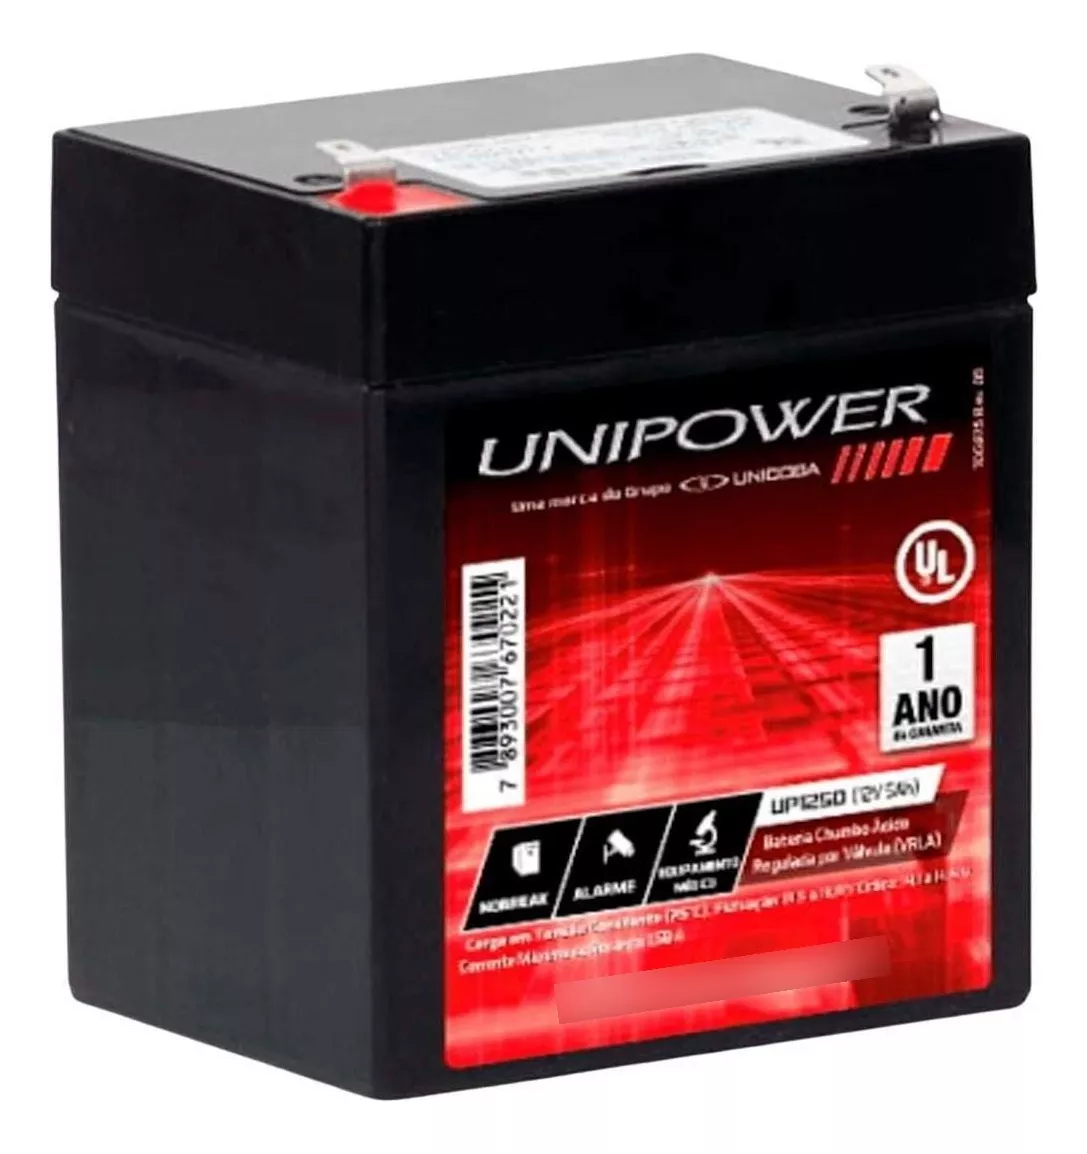 Segunda imagem para pesquisa de bateria unipower up1250 12v 5ah